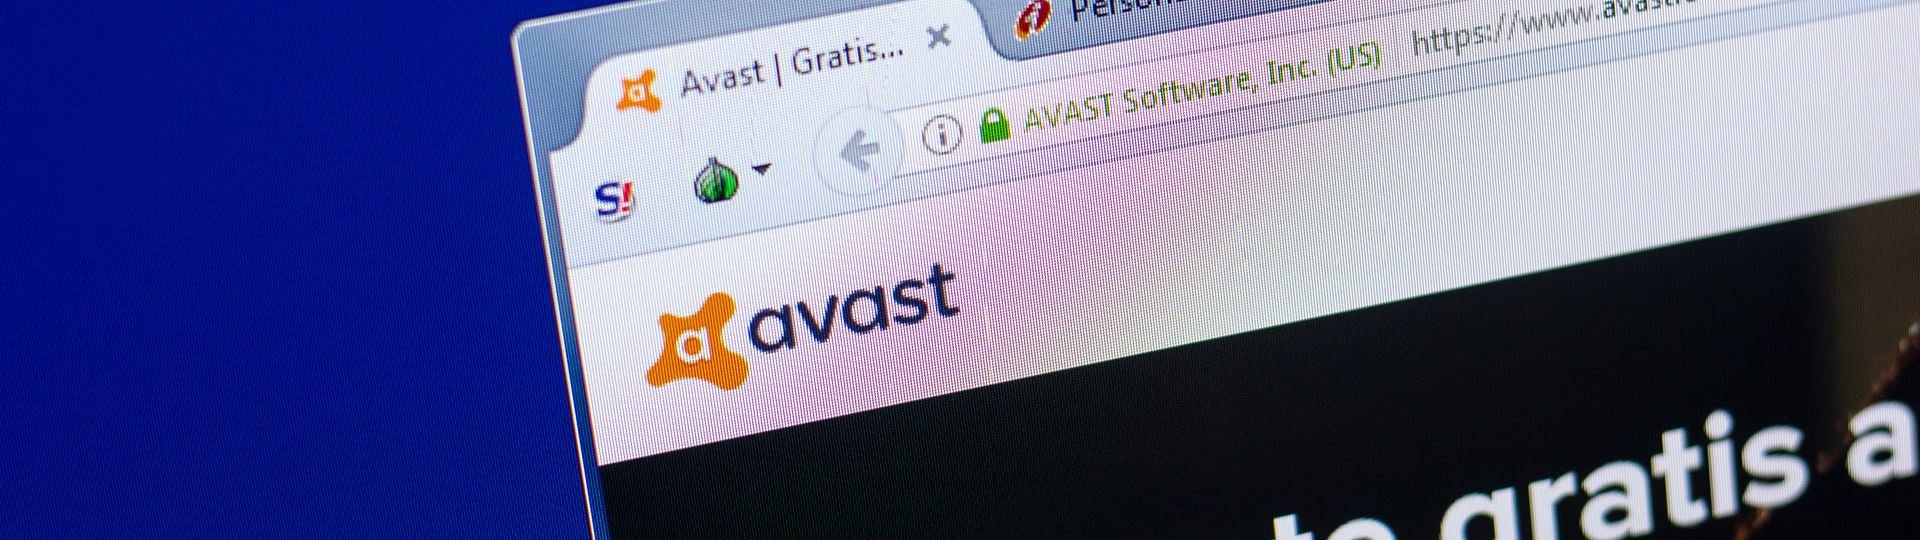 Avast se obchoduje první den po IPO